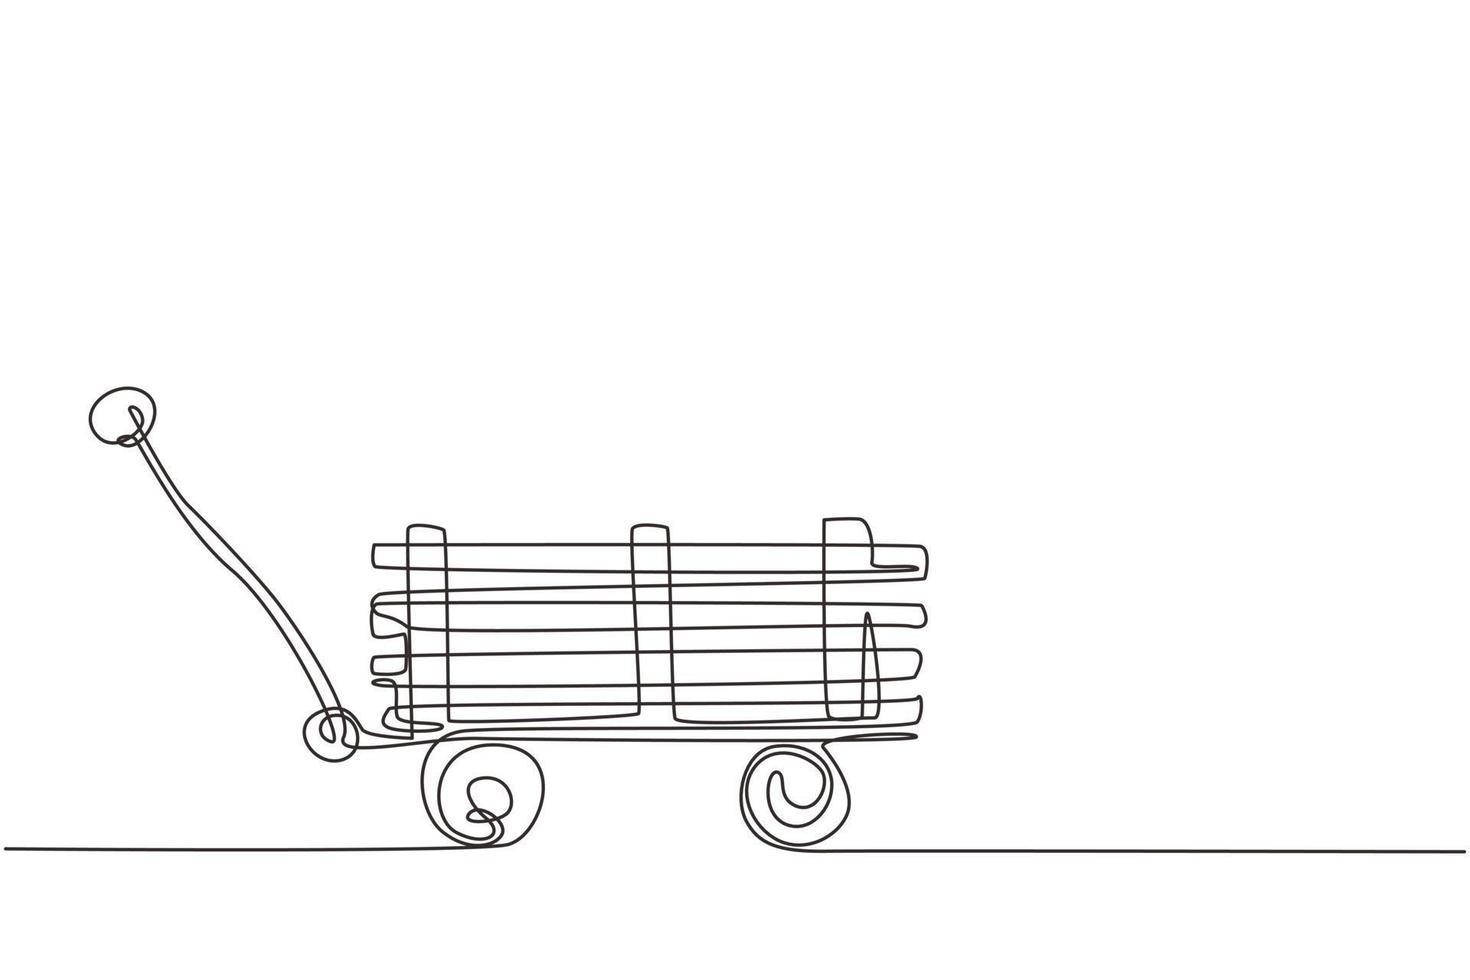 kontinuerlig en rad ritning leksak mini vagn med trä. lantbruksskottkärra. utrustning av trädgårdsvagn för trädgårdsarbete, skörd, plantering av plantor. enda rad rita design vektorgrafisk illustration vektor